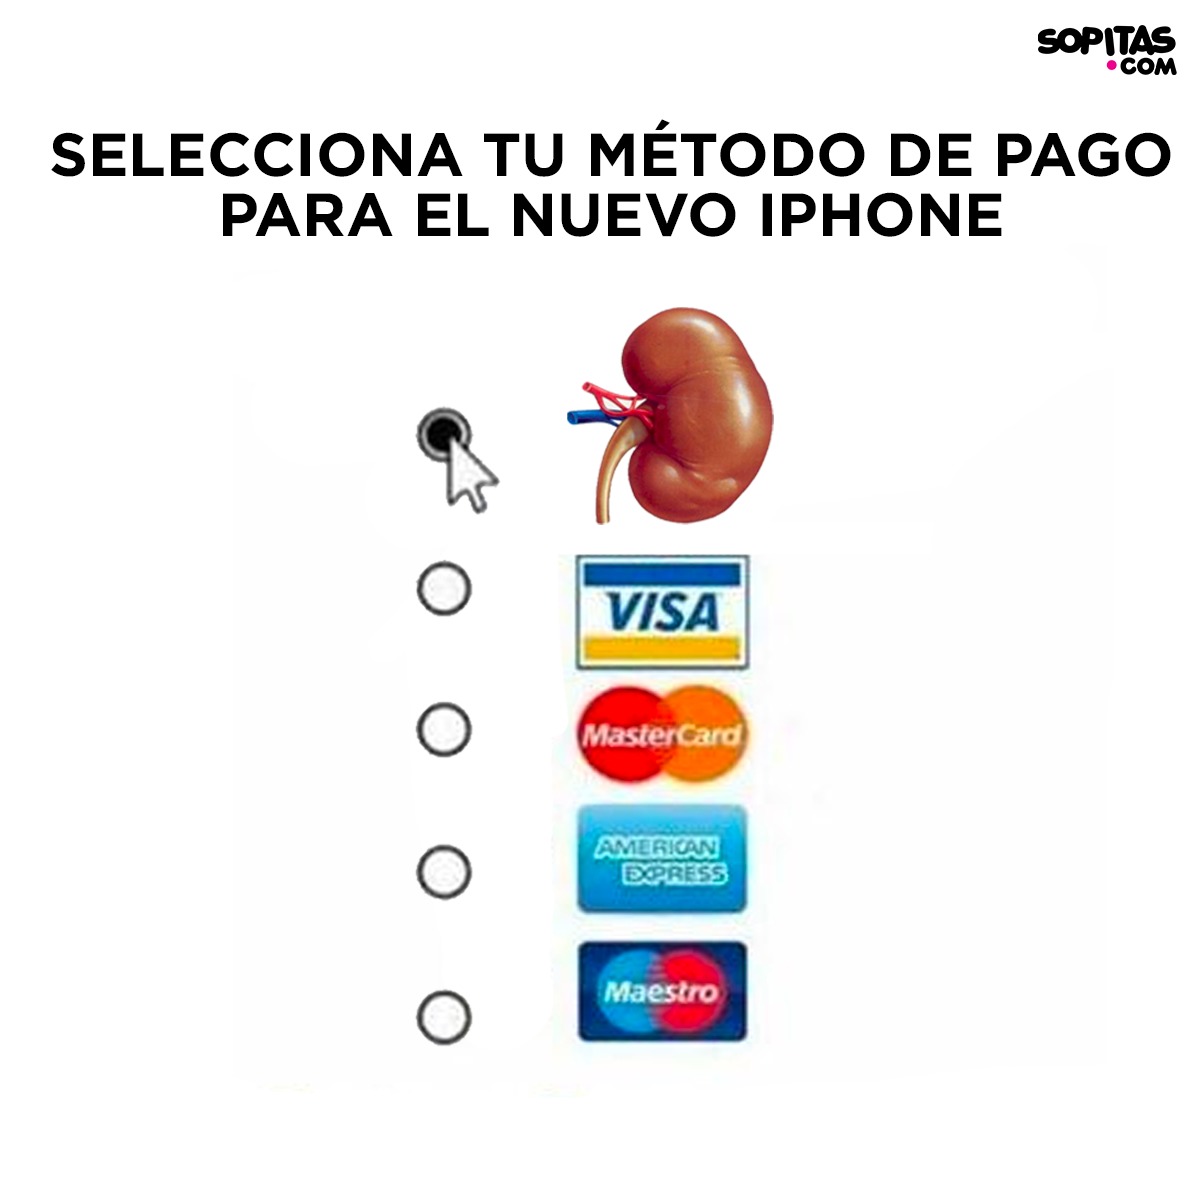 Precios y fechas de venta de los nuevos iPhone XS, XS Max y XR en México